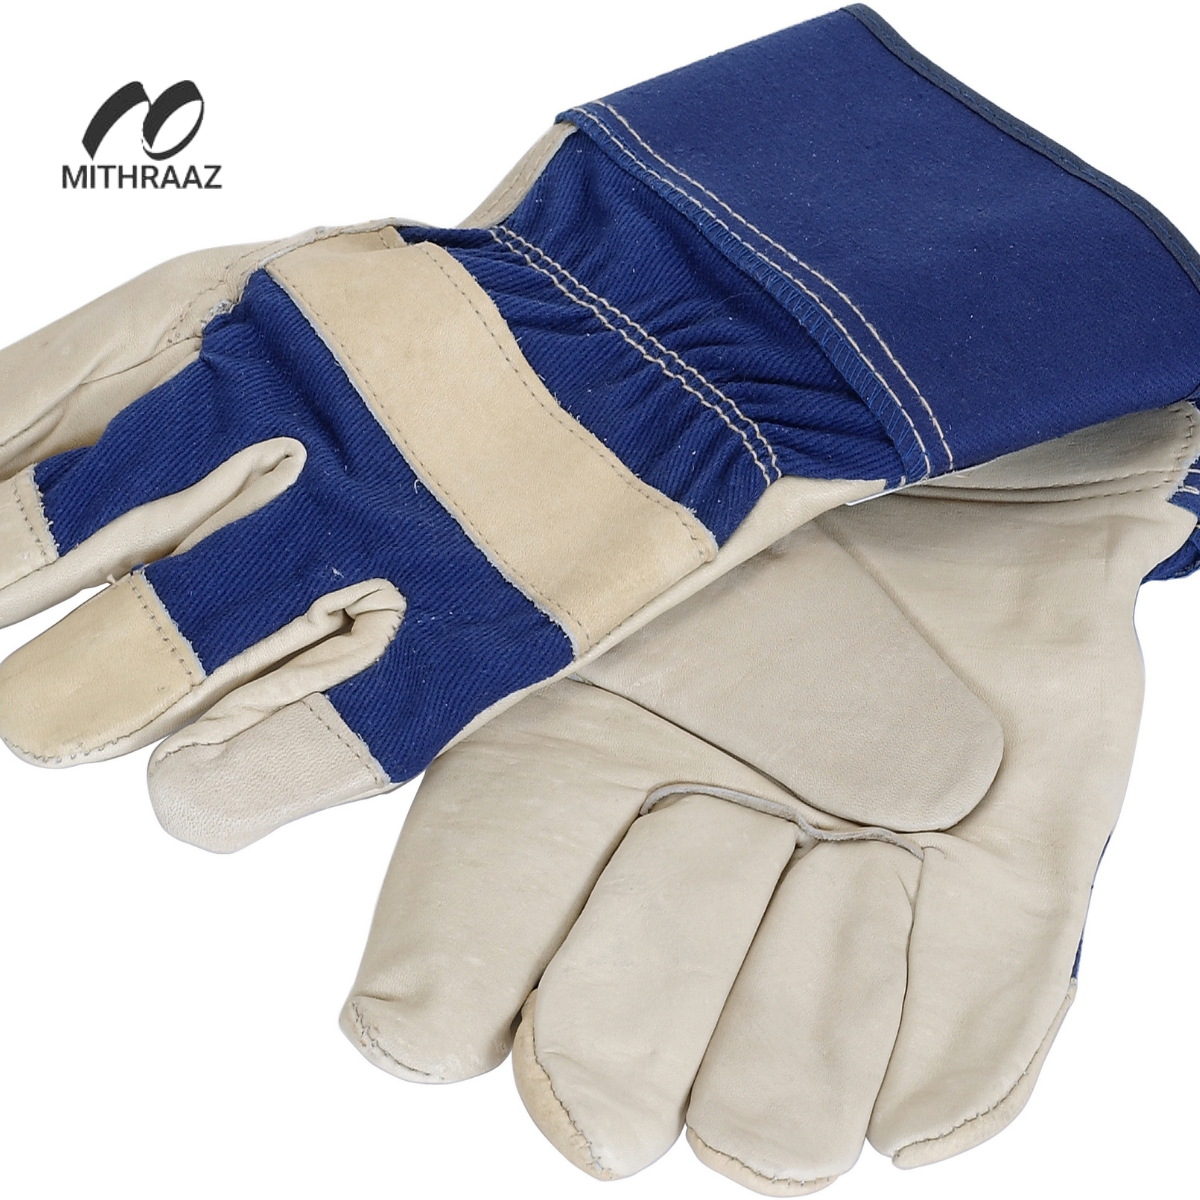 Mithraaz Goal Keeper Gloves